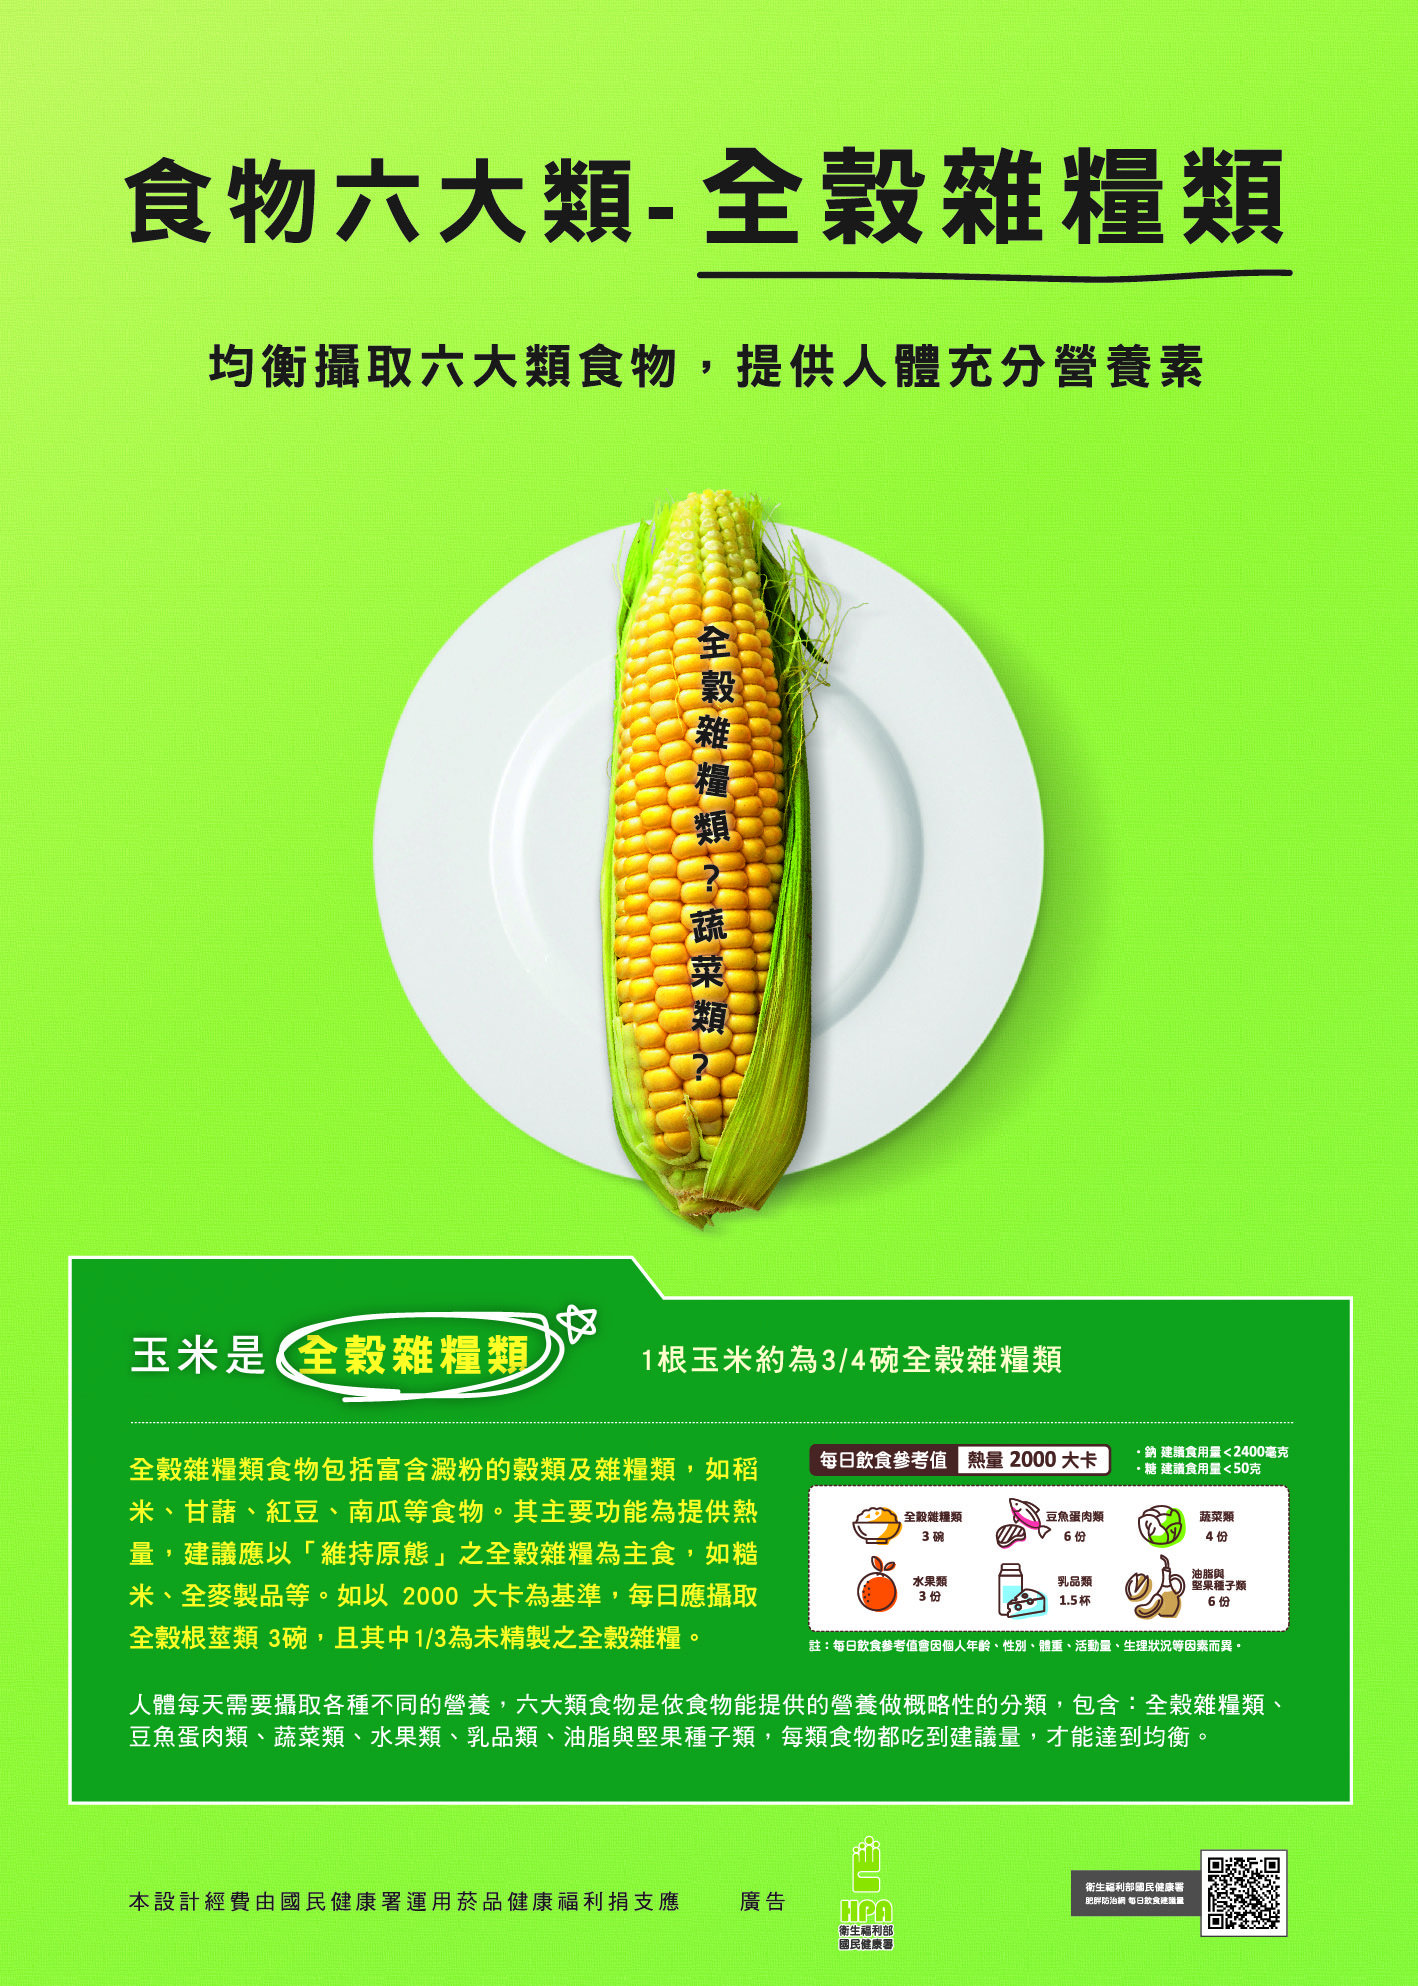 食物六大類-全穀雜糧類文章照片